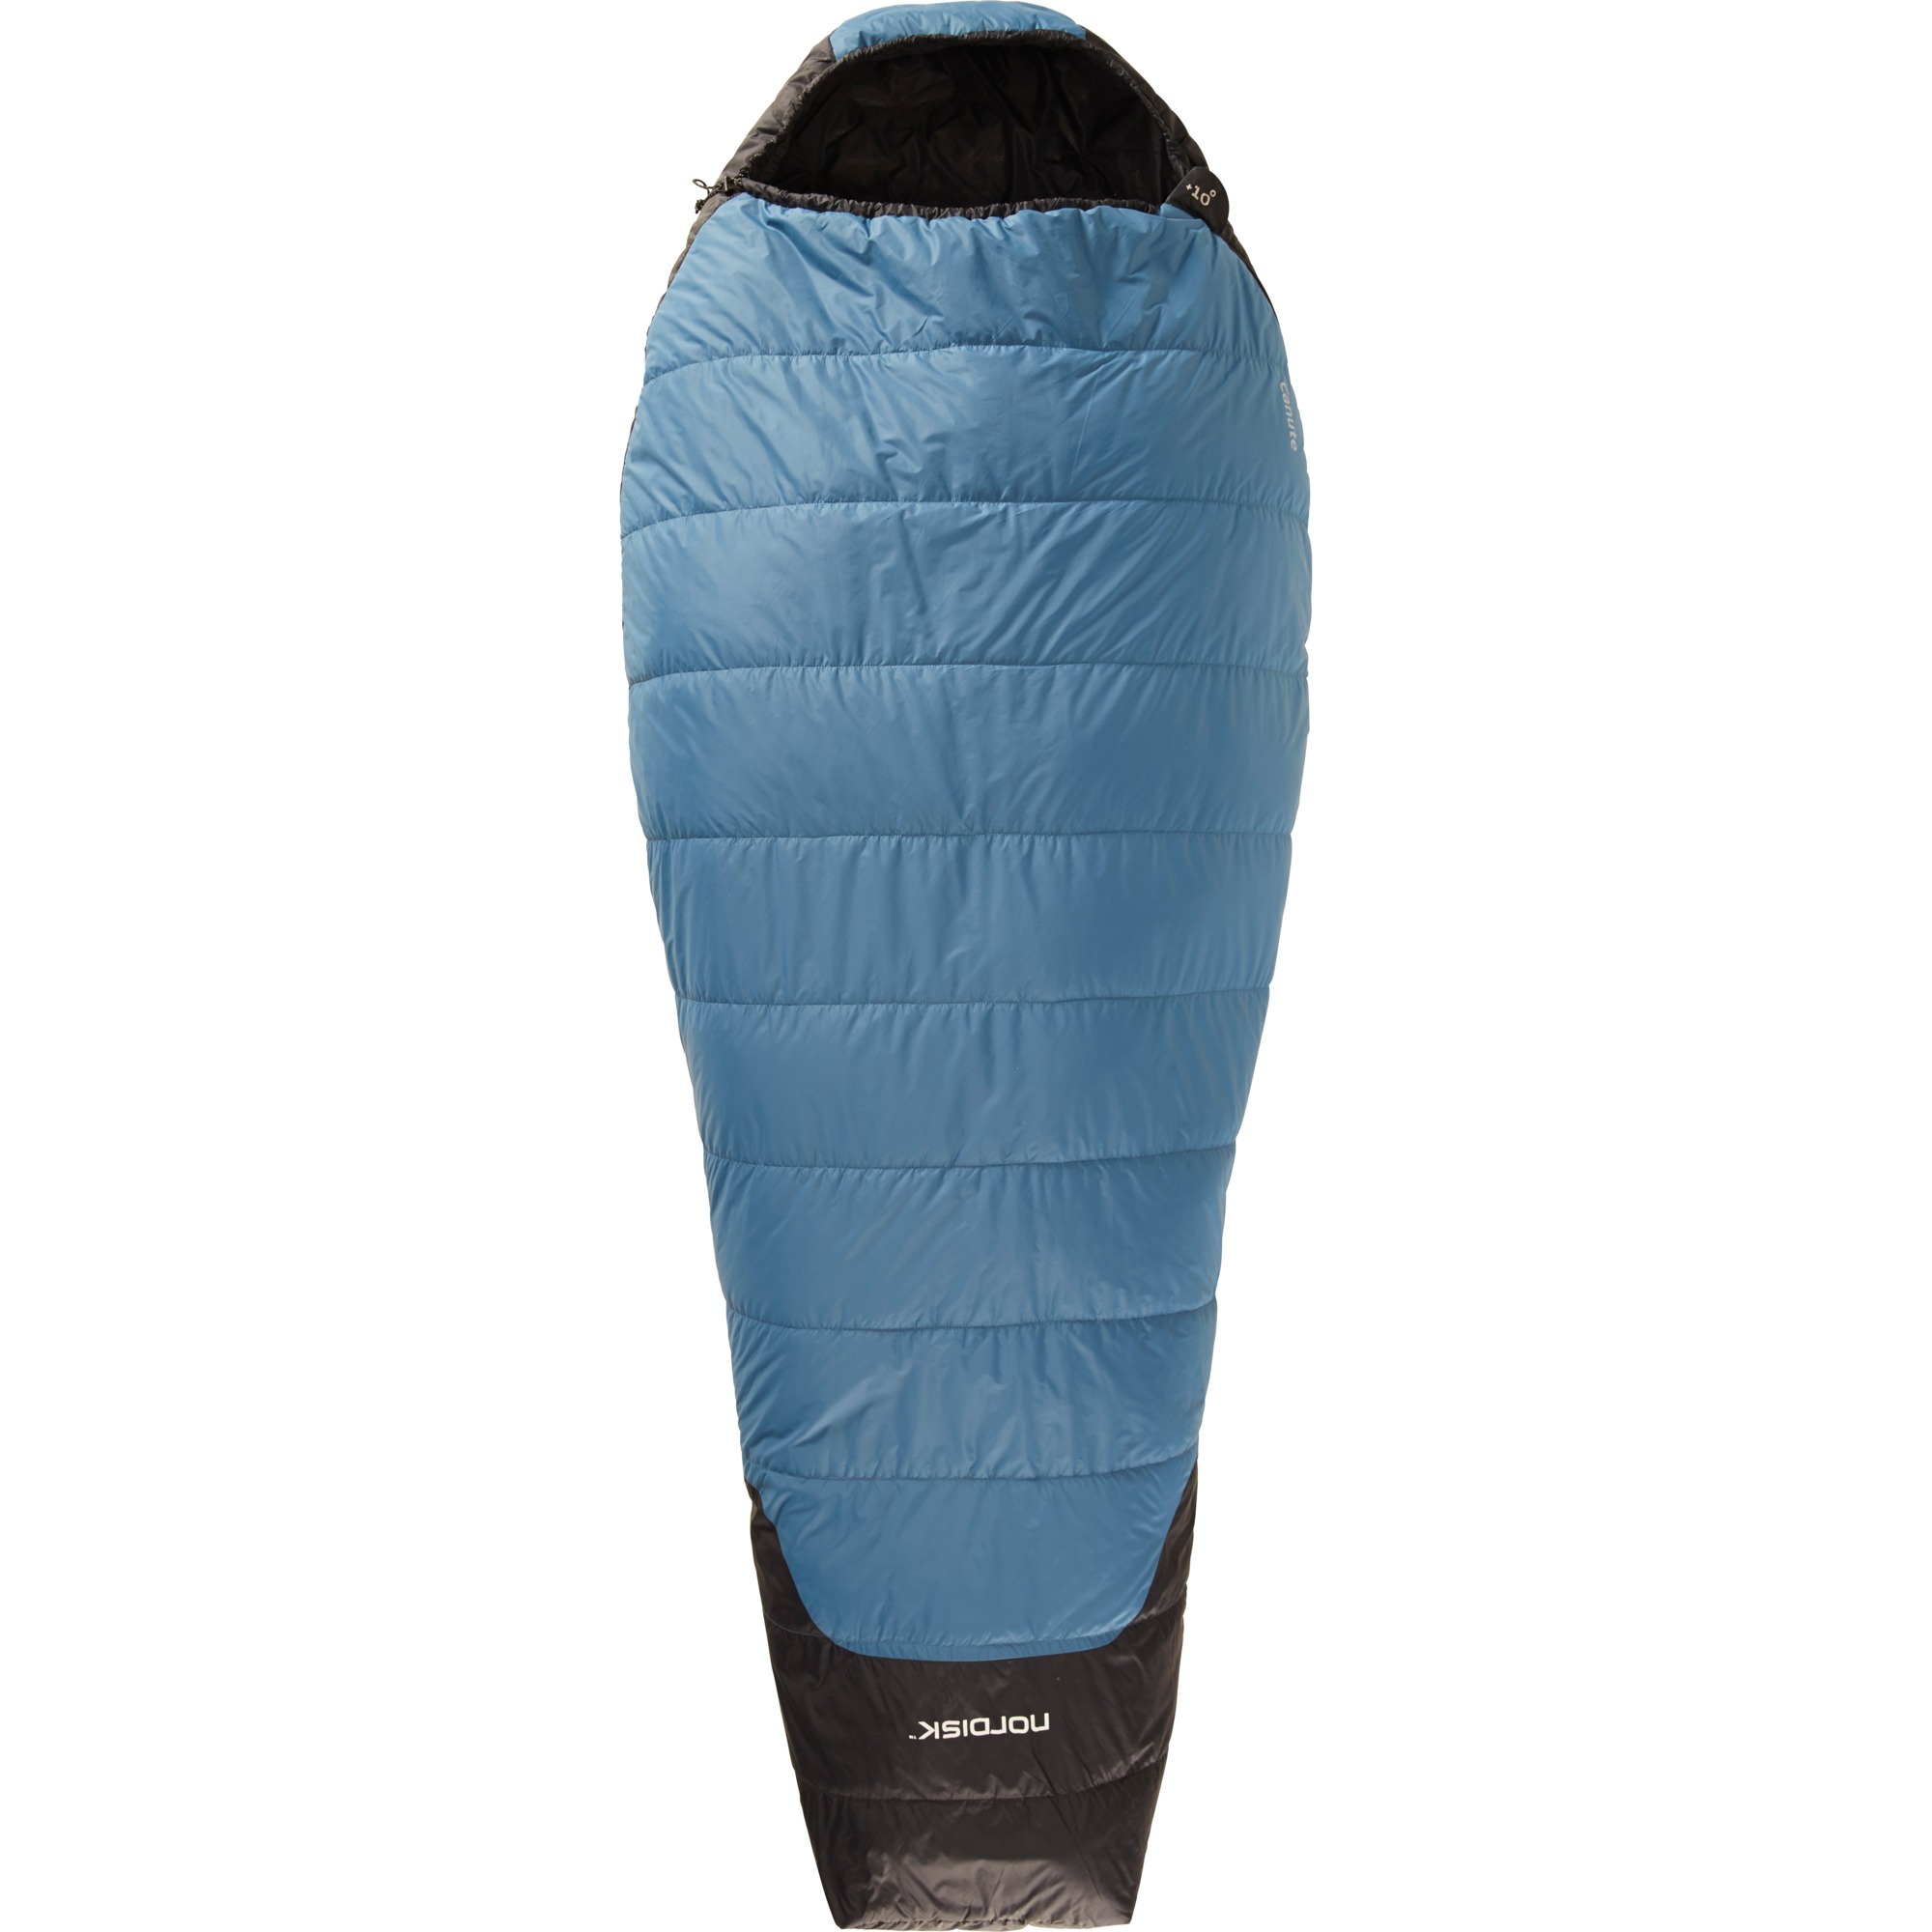 Image of Alternate - Canute +10° XL Sleeping Bag, Schlafsack online einkaufen bei Alternate